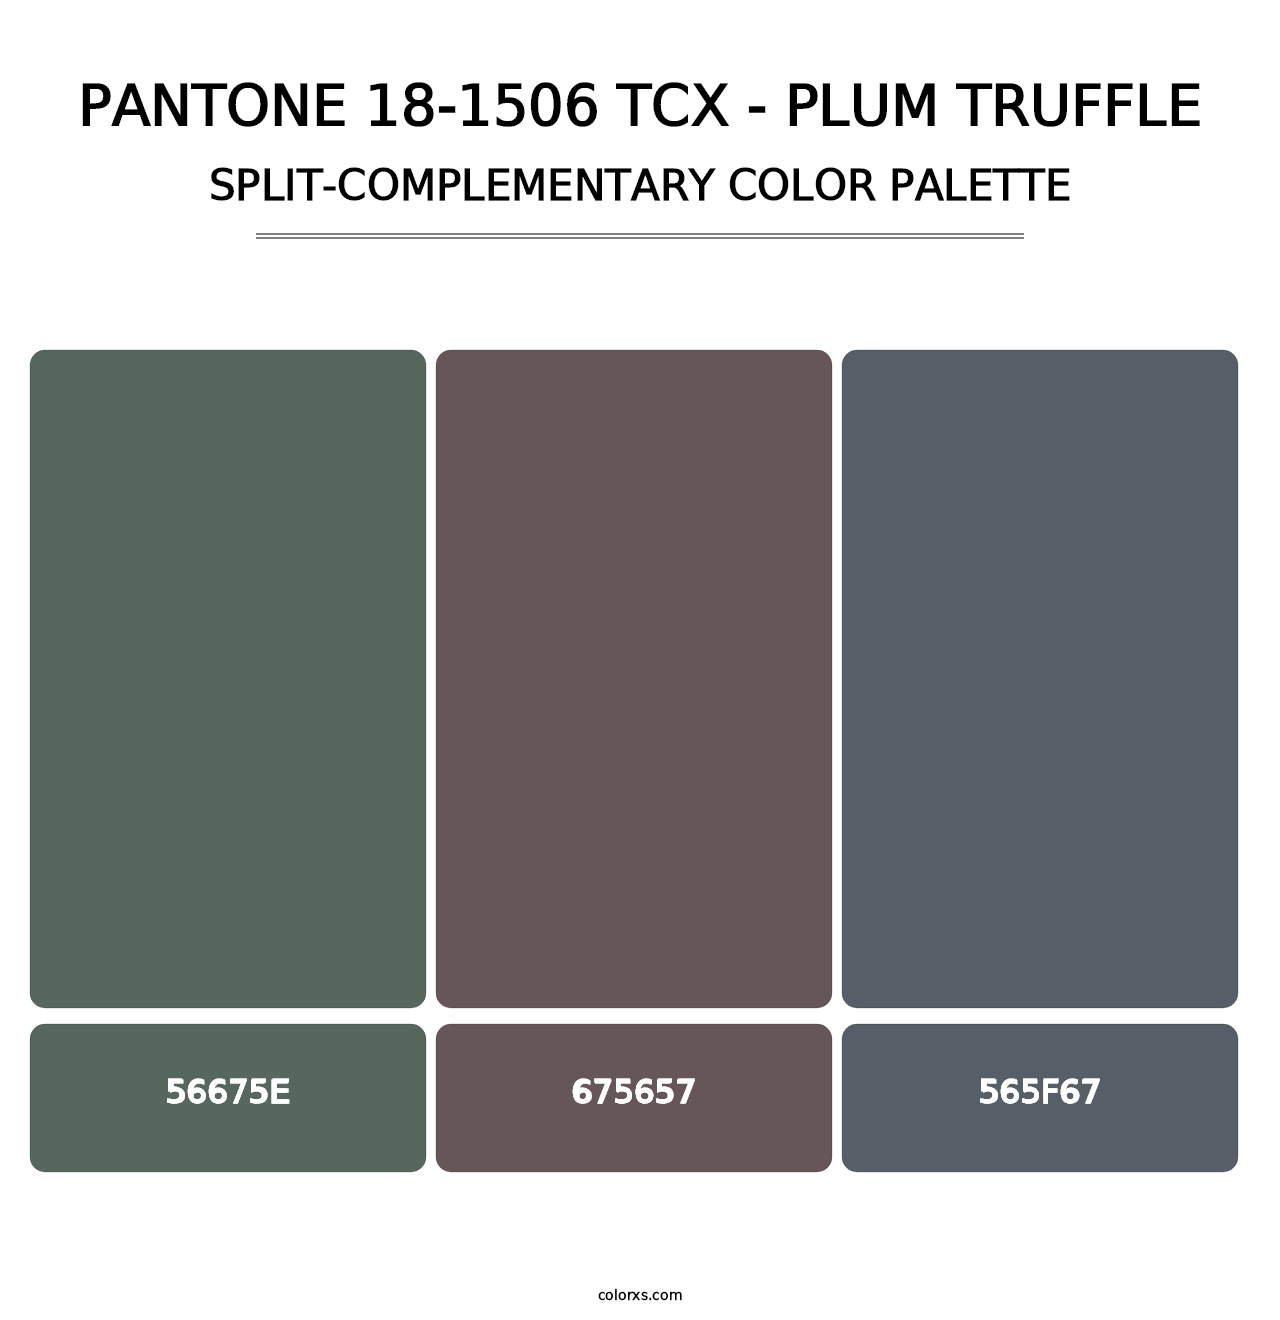 PANTONE 18-1506 TCX - Plum Truffle - Split-Complementary Color Palette